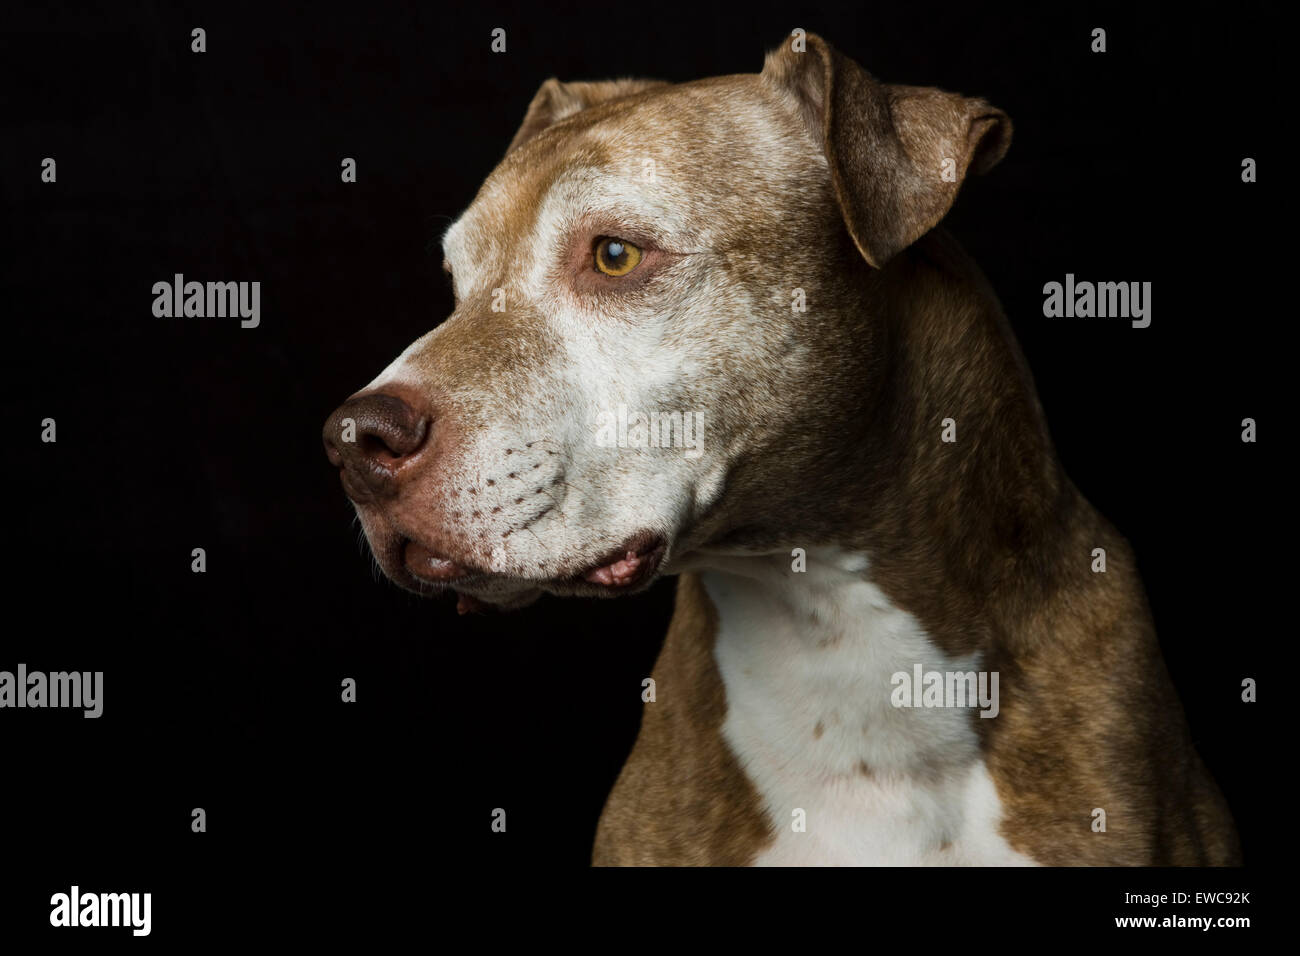 Classic Studio colpo di testa di un marrone capelli corti grigi senior Pitbull cane nel profilo su uno sfondo nero Foto Stock